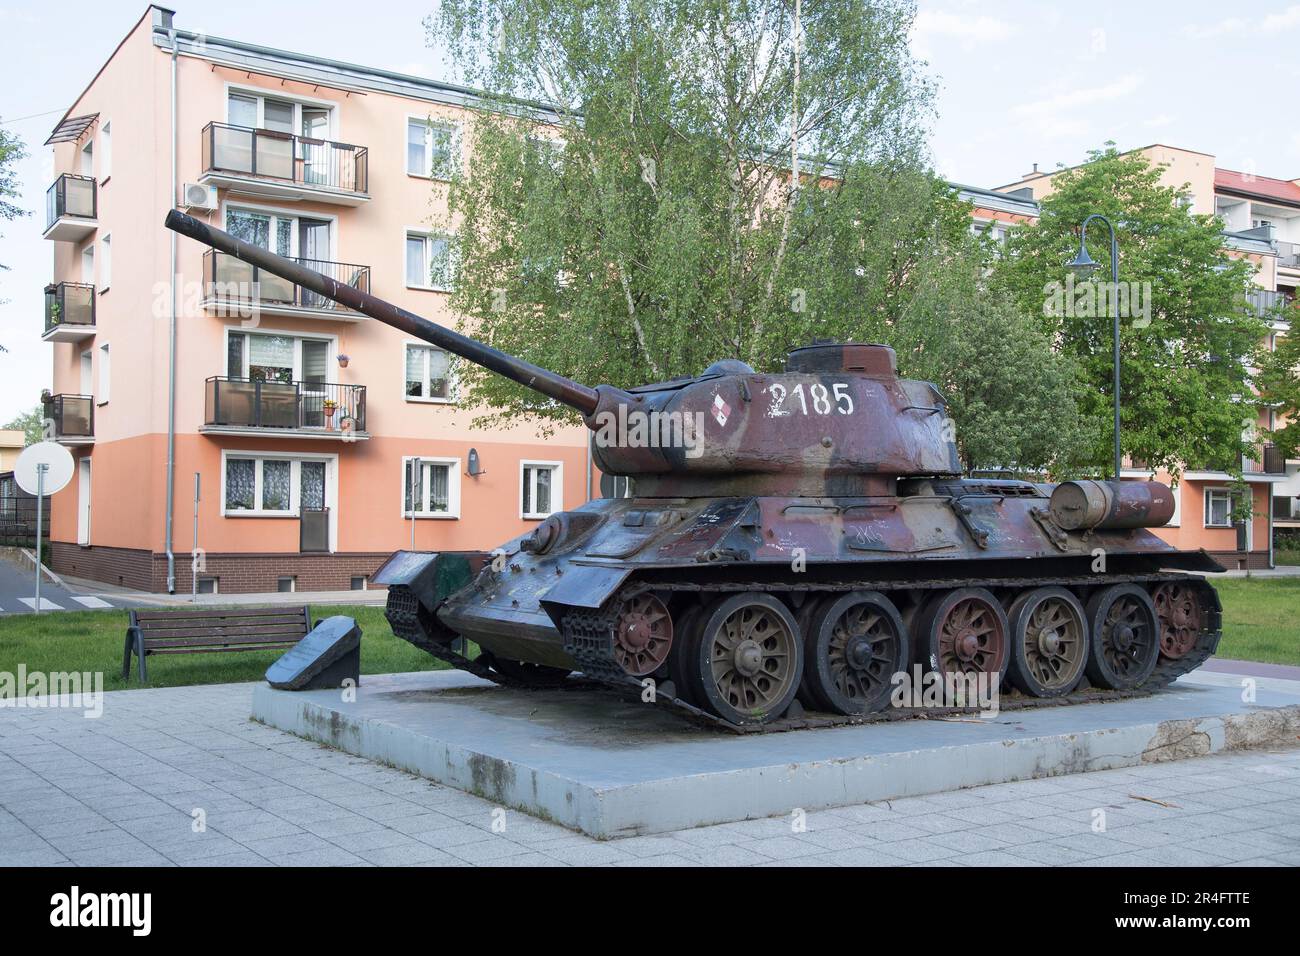 Russian tank T-34 85 in Braniewo, Poland © Wojciech Strozyk / Alamy Stock Photo Stock Photo